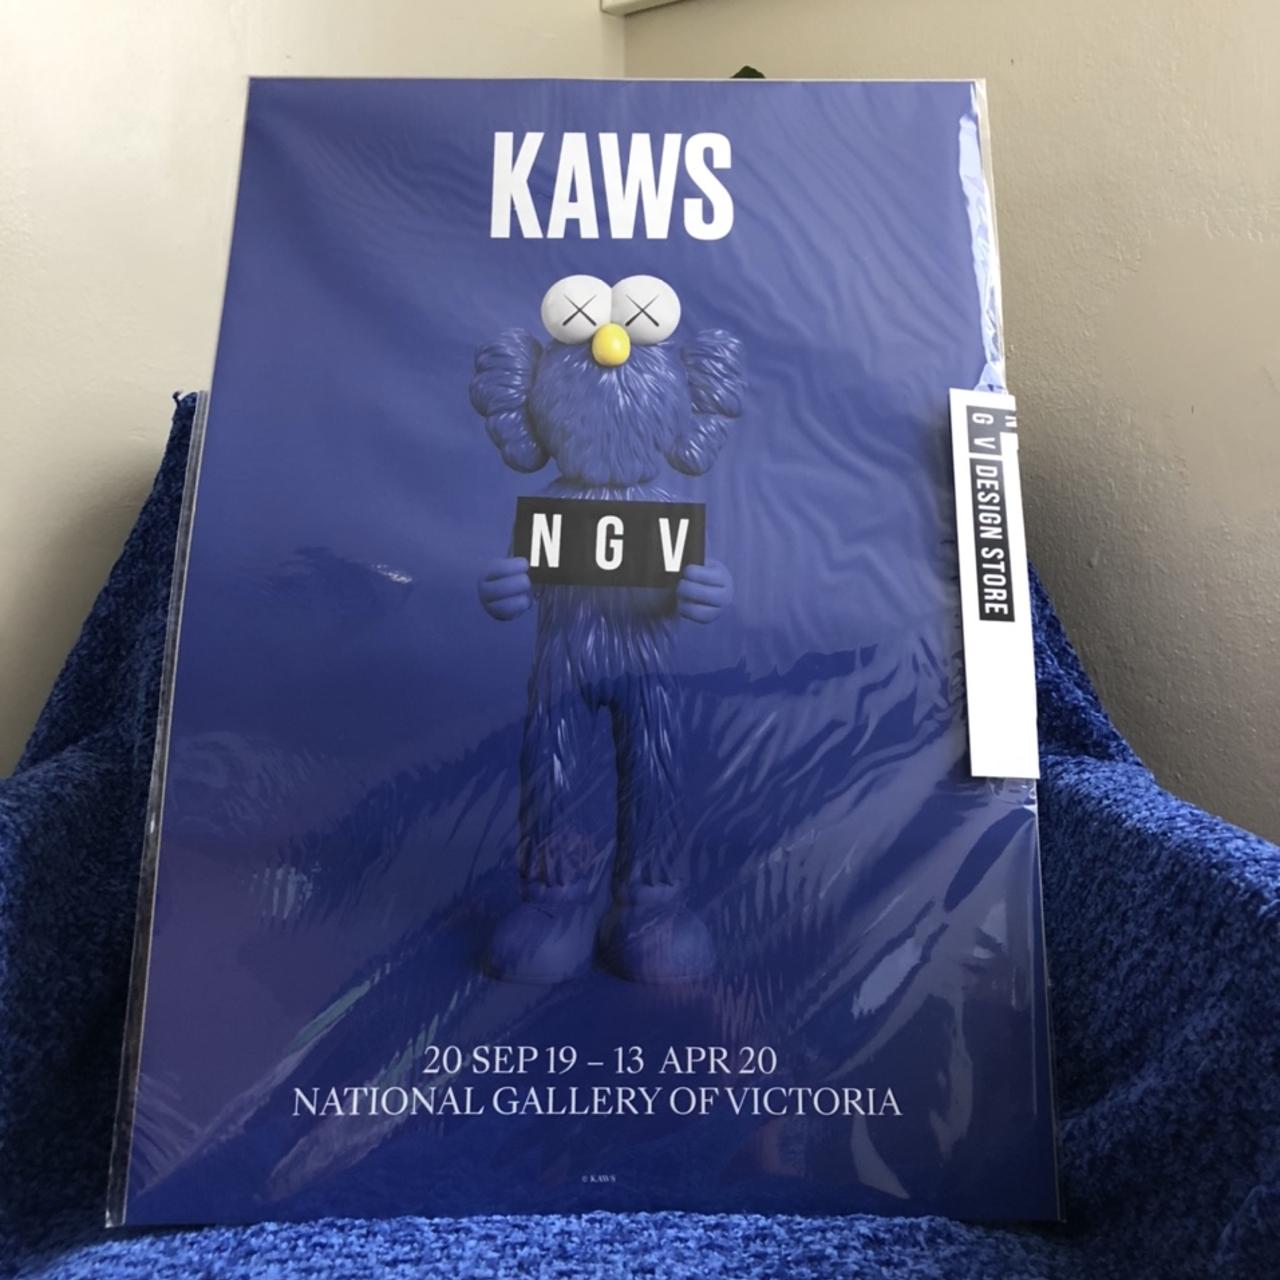 Kaws lv , Gallery framed art for your home , office - Depop